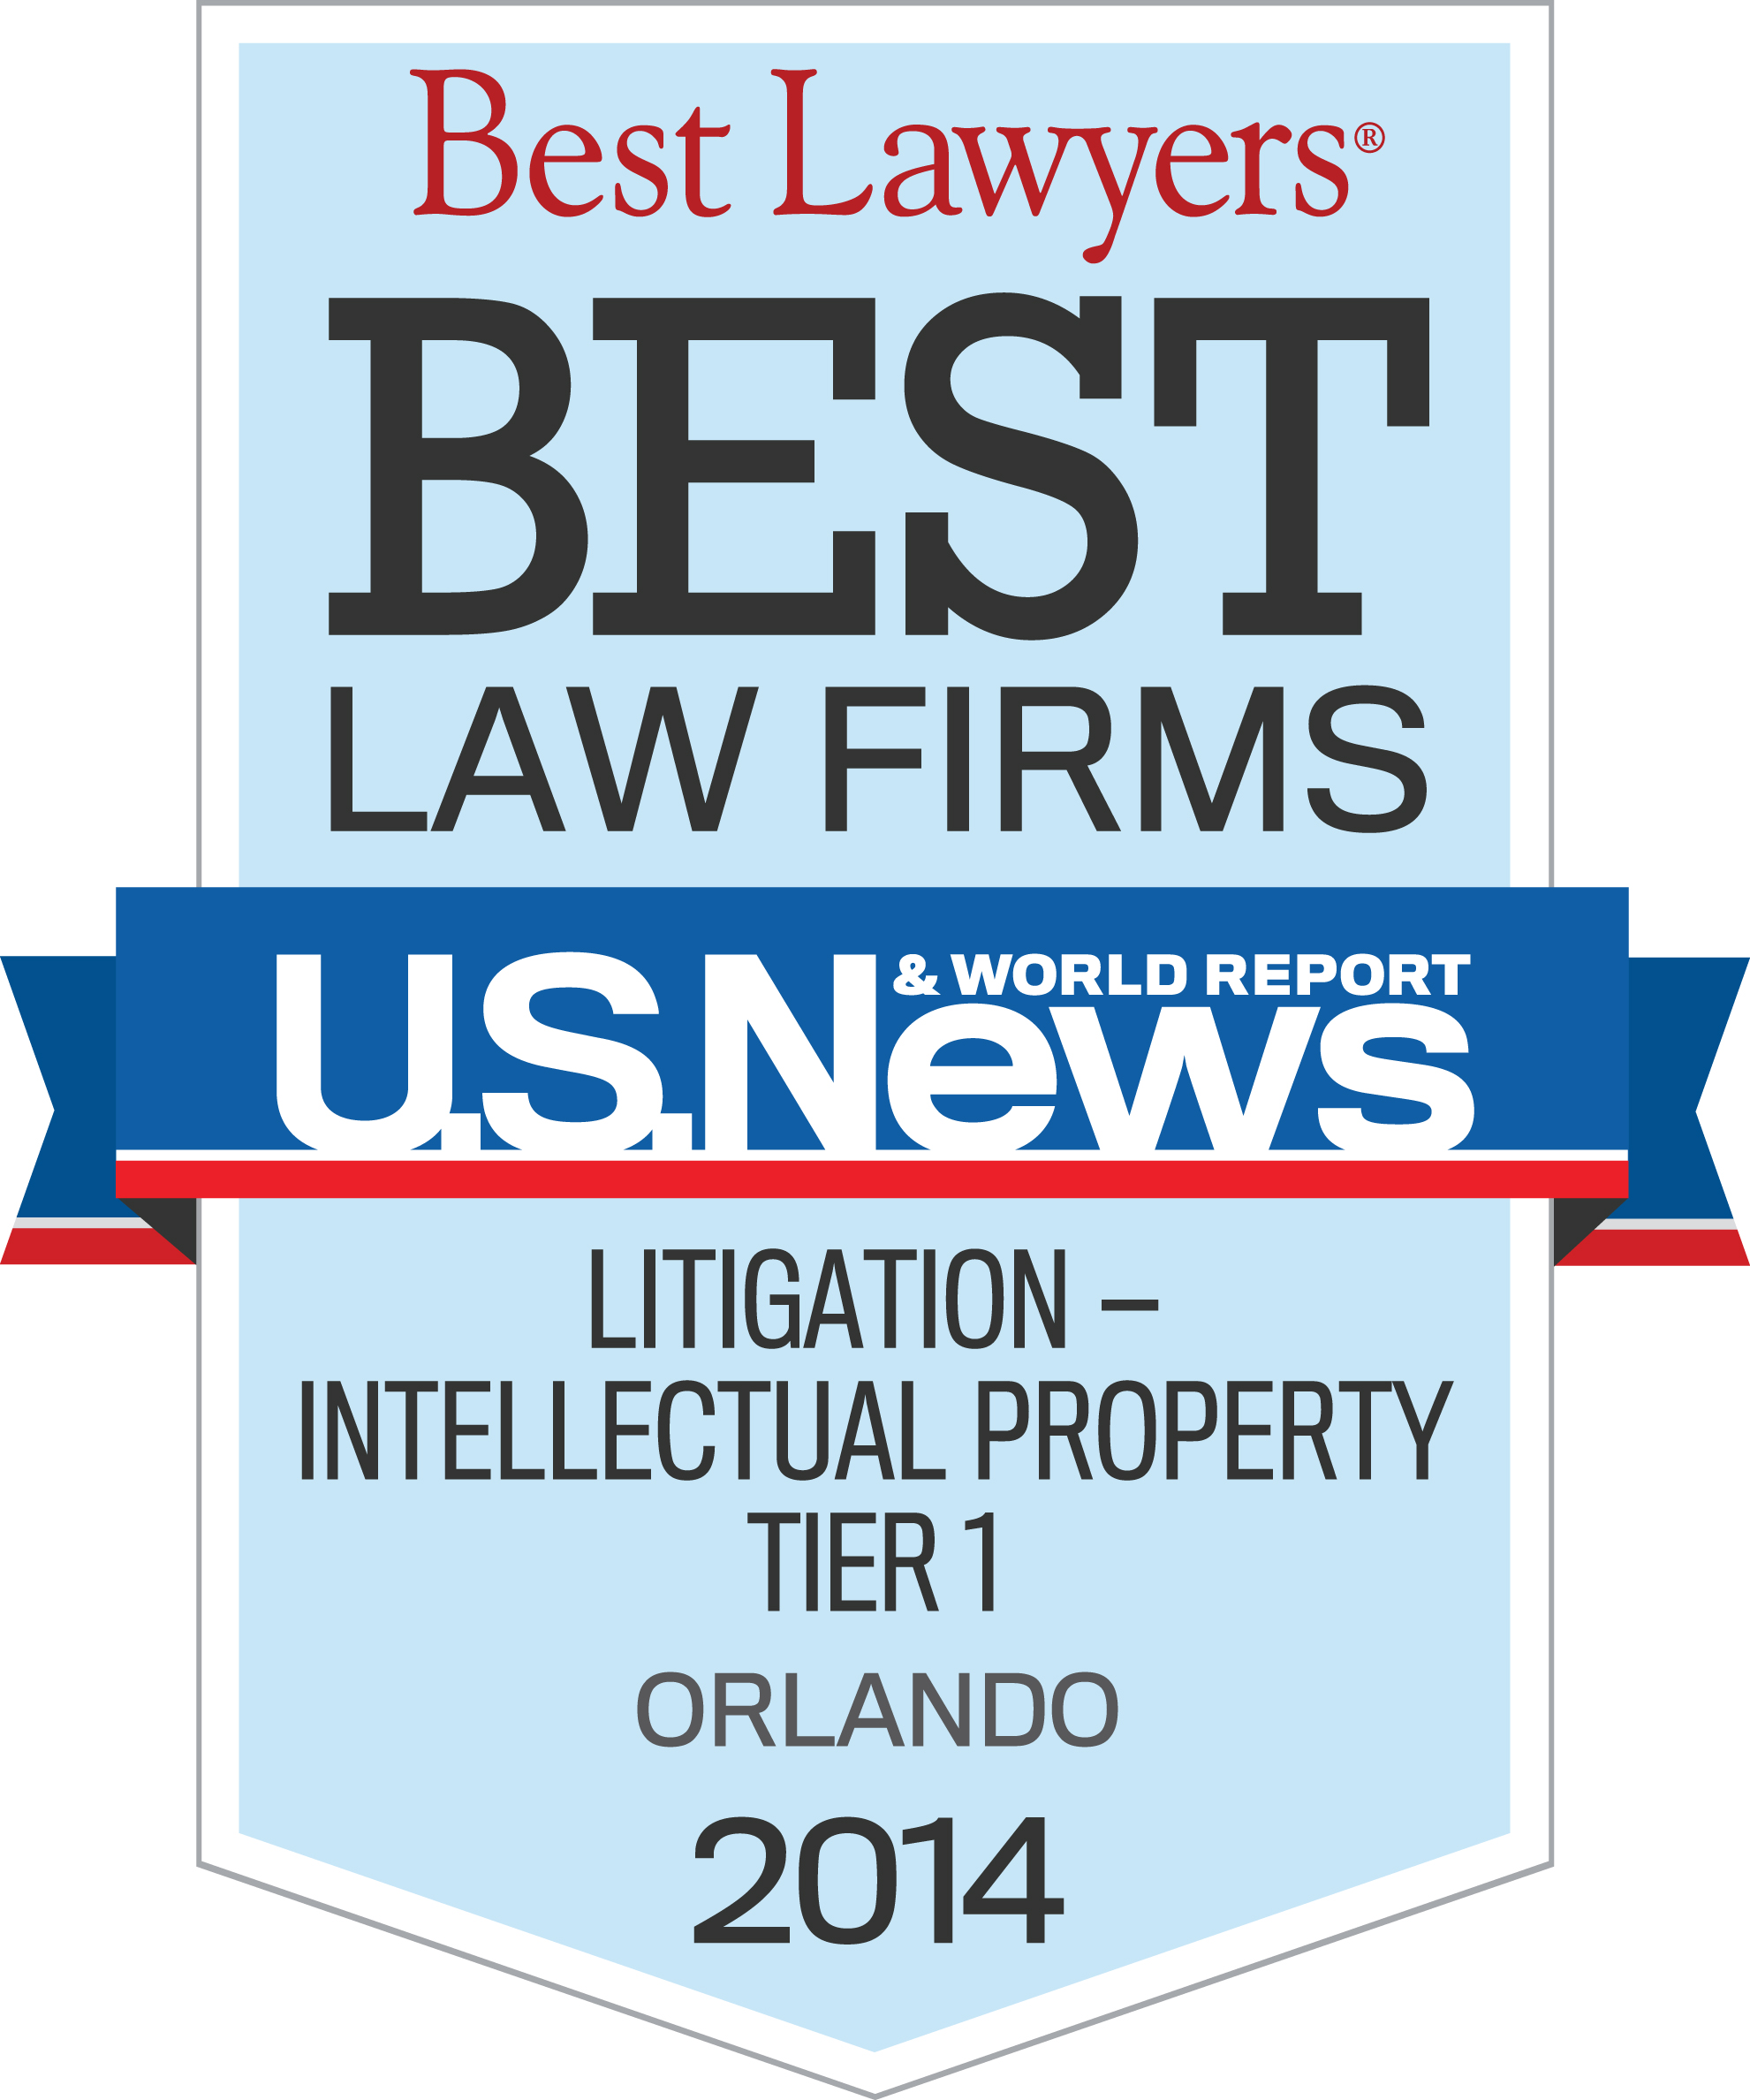 BLF-Miami-Tier-1-2014-Litigation-Intellectual-Property